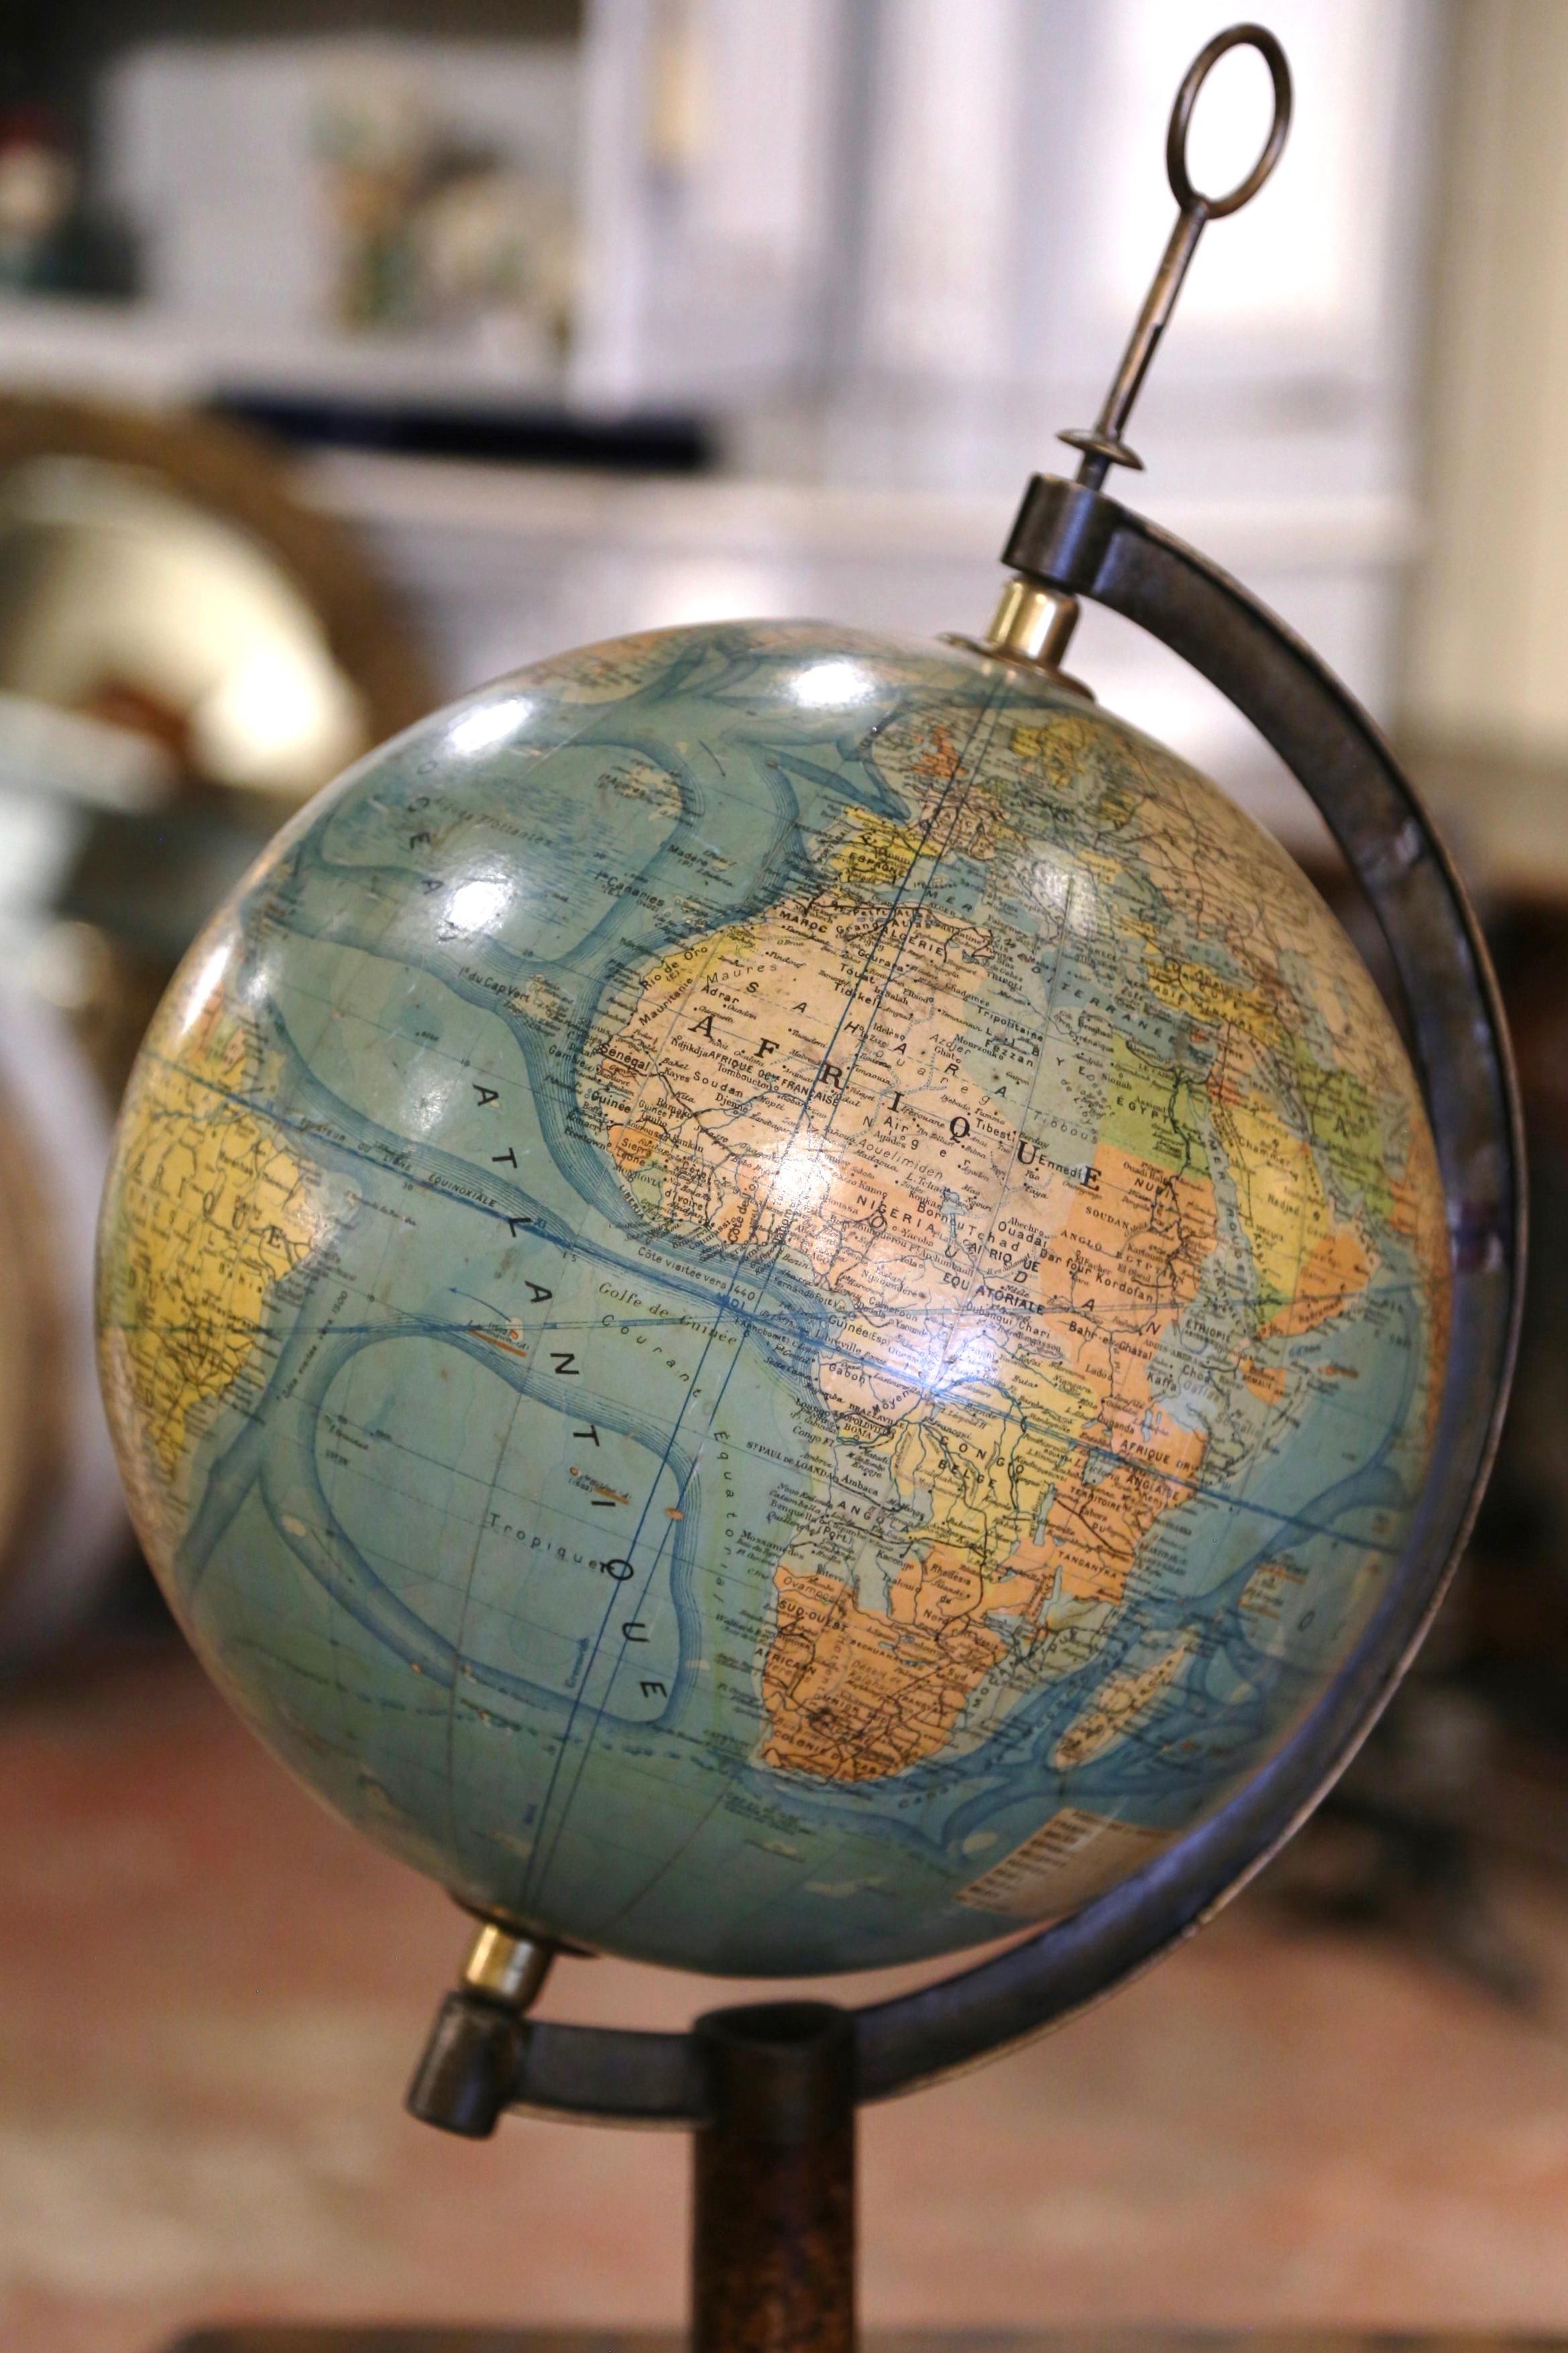 Décorez un bureau avec ce globe terrestre antique magnifiquement conservé. Fabriquée en France vers 1930, cette pièce terrestre est montée sur un socle tripode en fonte peint en doré et décoré de coquillages et de motifs floraux. La tige en laiton